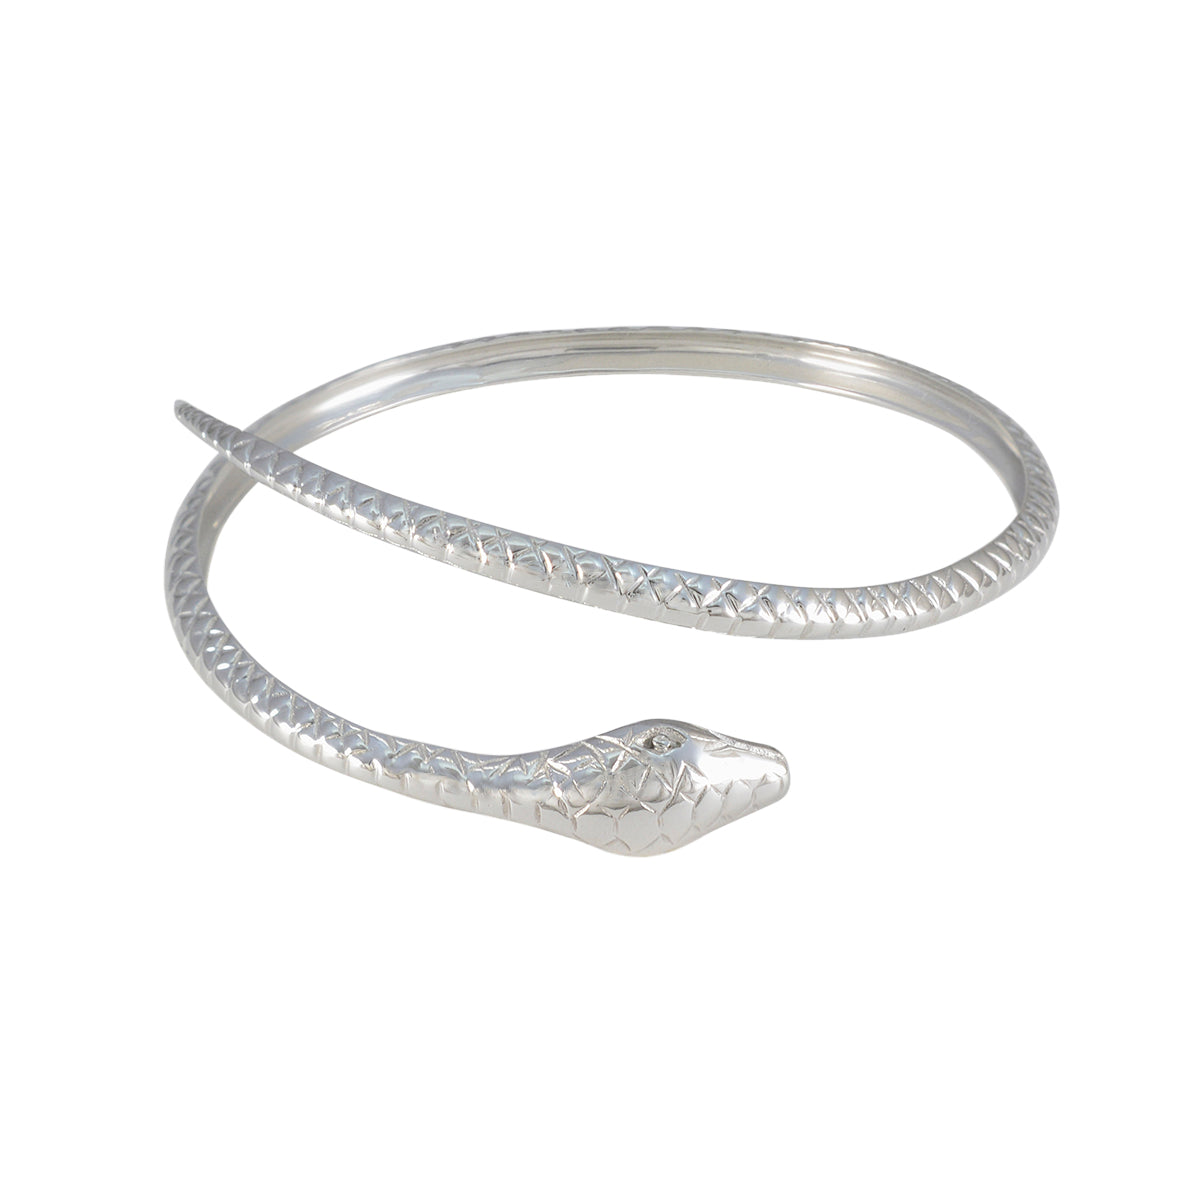 RIYO привлекательный браслет из стерлингового серебра 925 пробы для девочек, простой браслет, браслет, браслет, размер l, 6-8,5 дюймов.